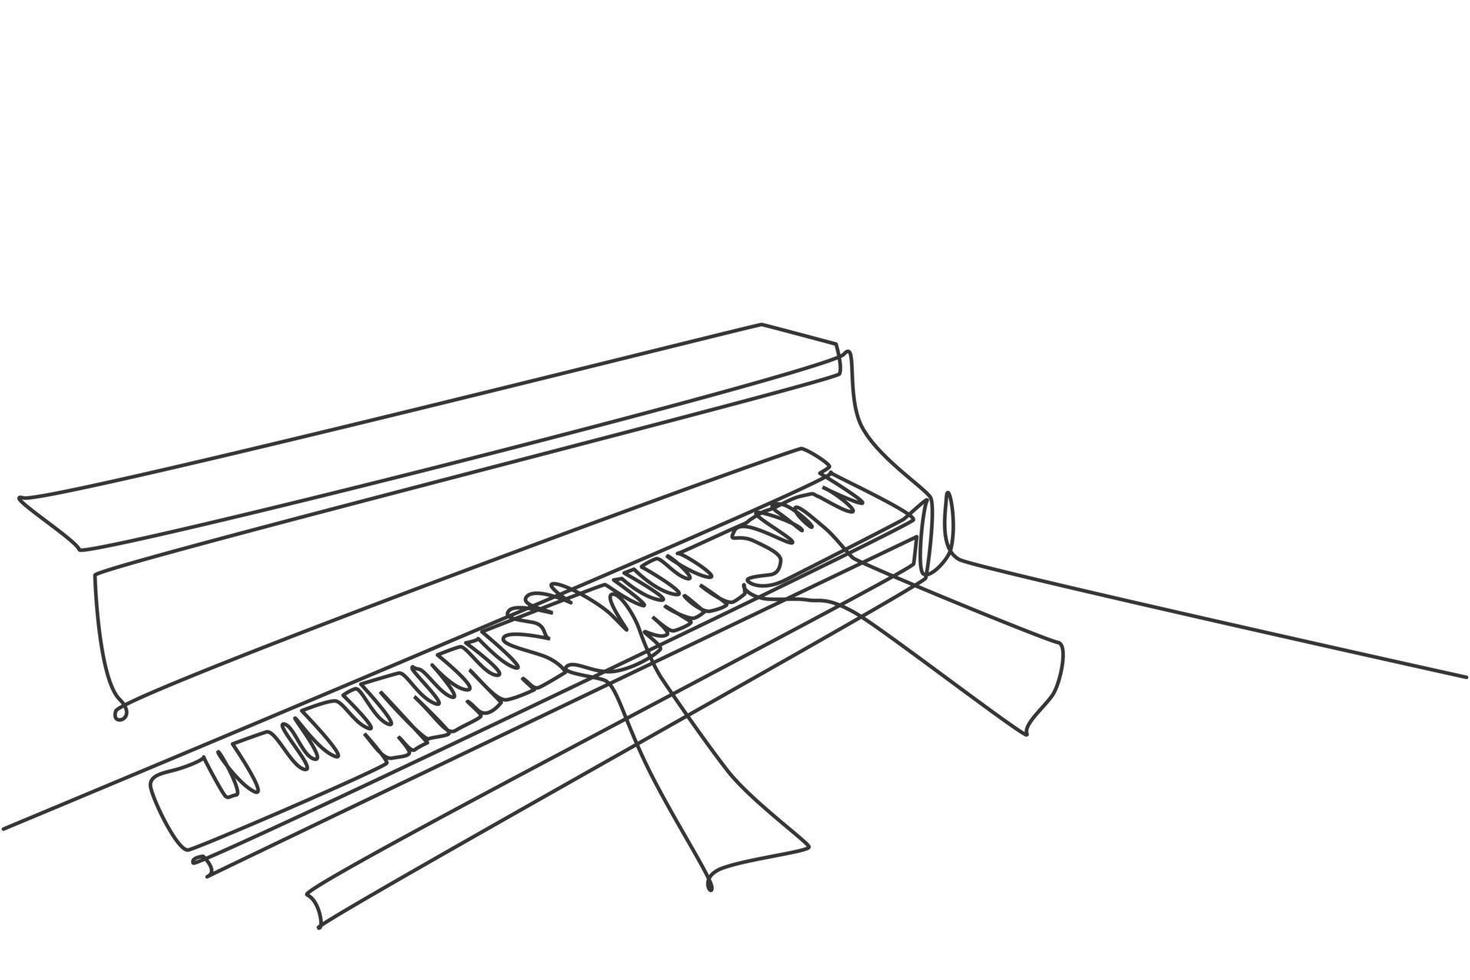 Eine durchgehende Strichzeichnung eines jungen, glücklichen männlichen Pianisten, der klassischen Flügel aus der Seitenansicht spielt. Musiker Künstler Performance Konzept Single Line Draw Design Vektorgrafik Illustration vektor